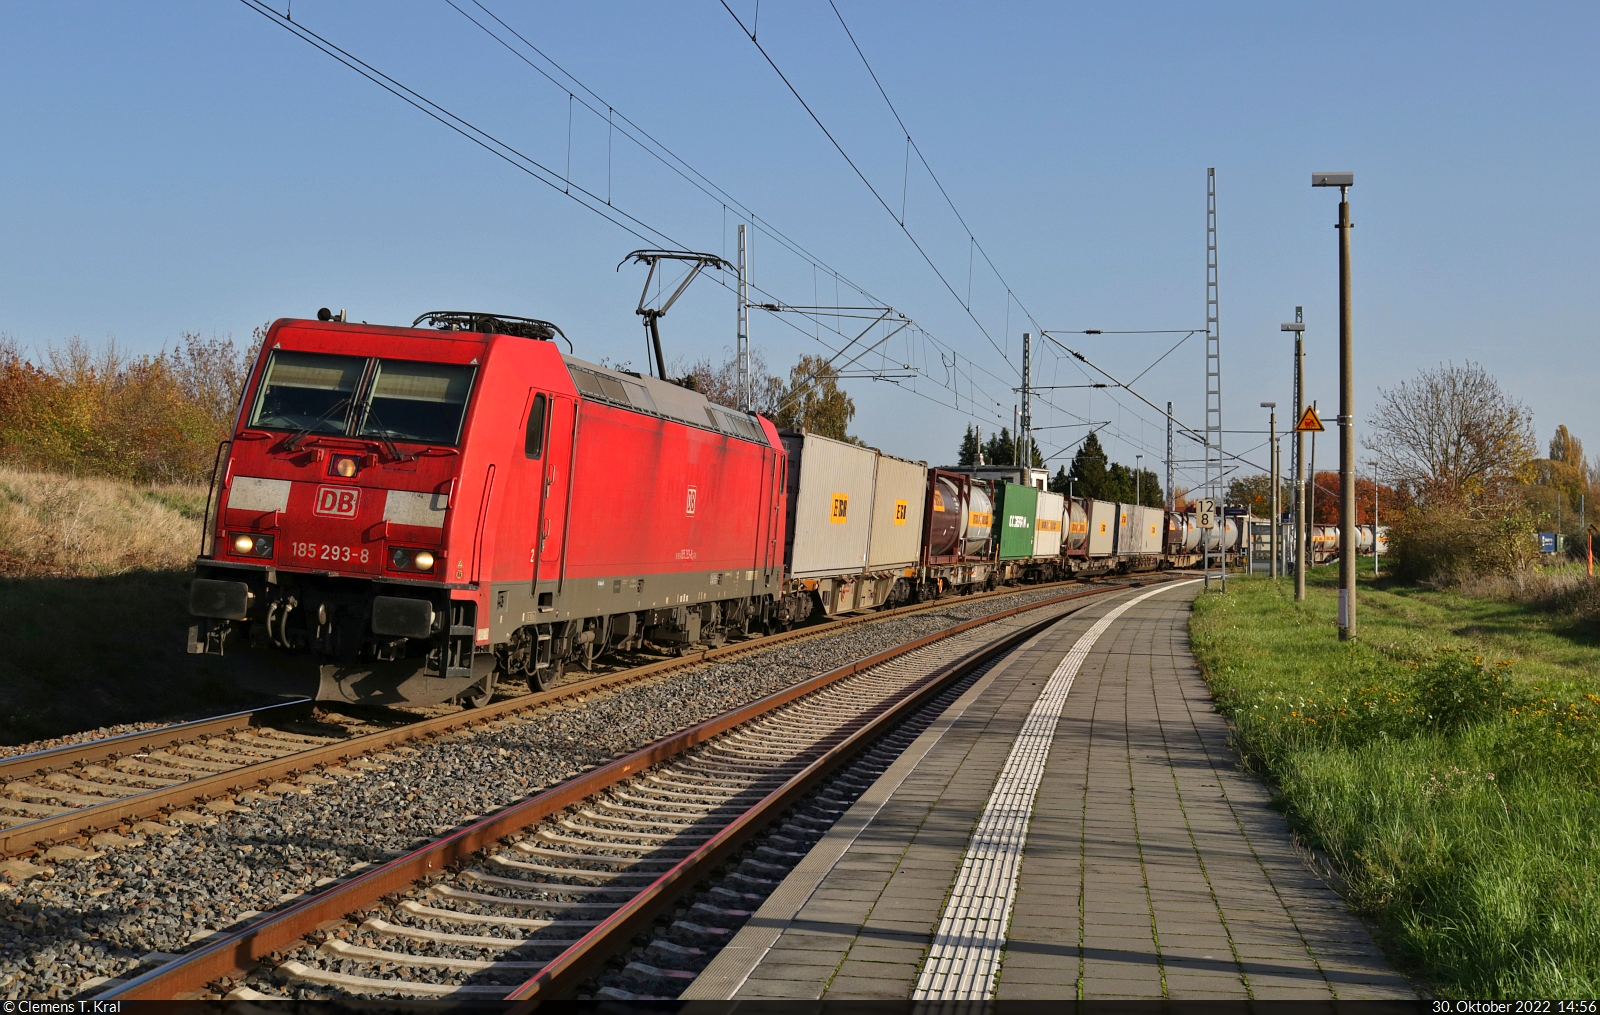 185 293-8 unterwegs mit Bertschi-Containern an der Blockstelle Zscherben Richtung Sangerhausen.

🧰 DB Cargo
🕓 30.10.2022 | 14:56 Uhr